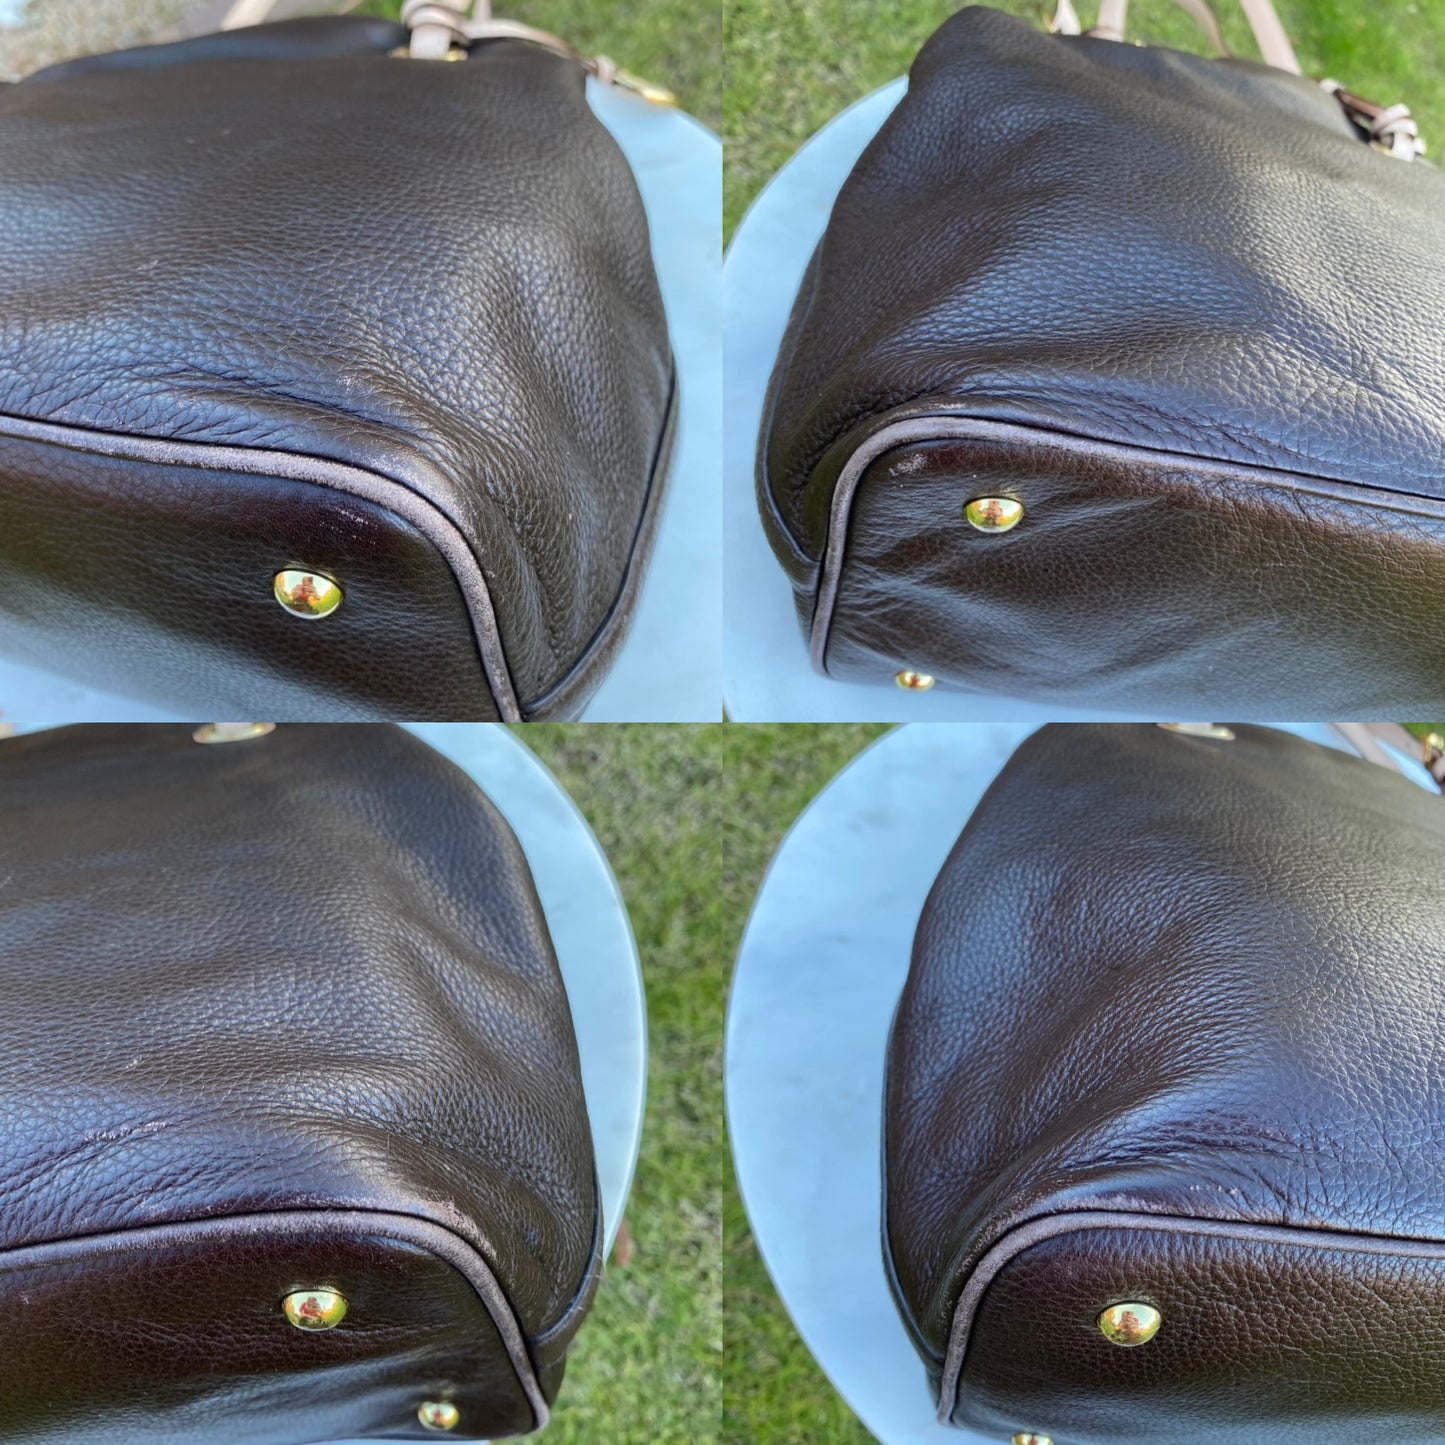 Michael Kors Leather Shoulder Bag